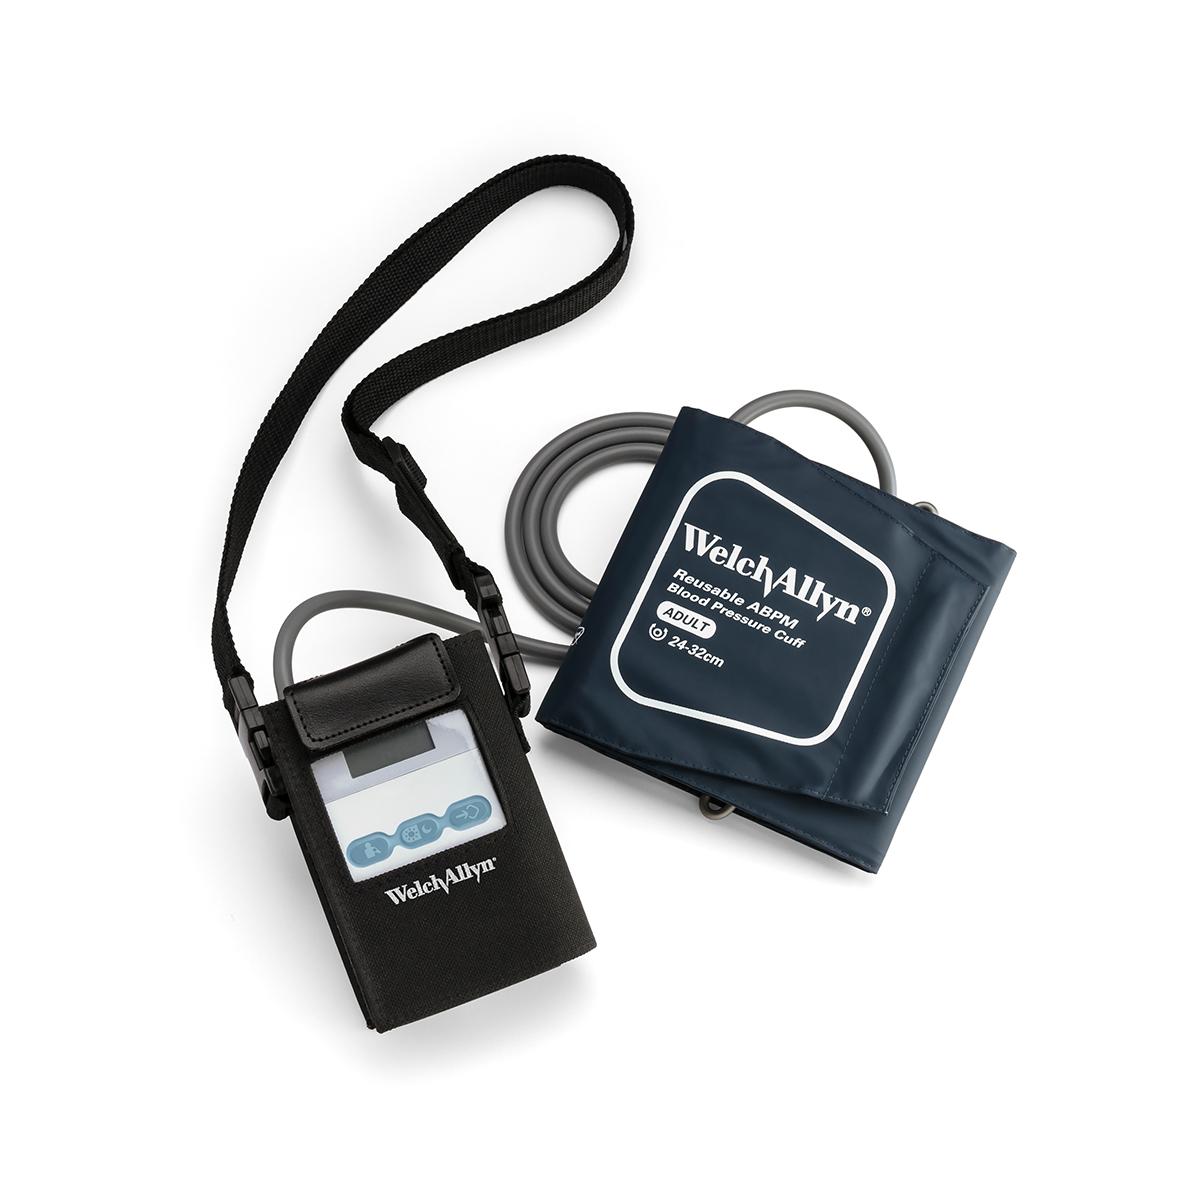 ABPM 7100 Blodtrycksmätare för 24-timmarsmätning i bärväska med manschett mot vit bakgrund, bild ovanifrån